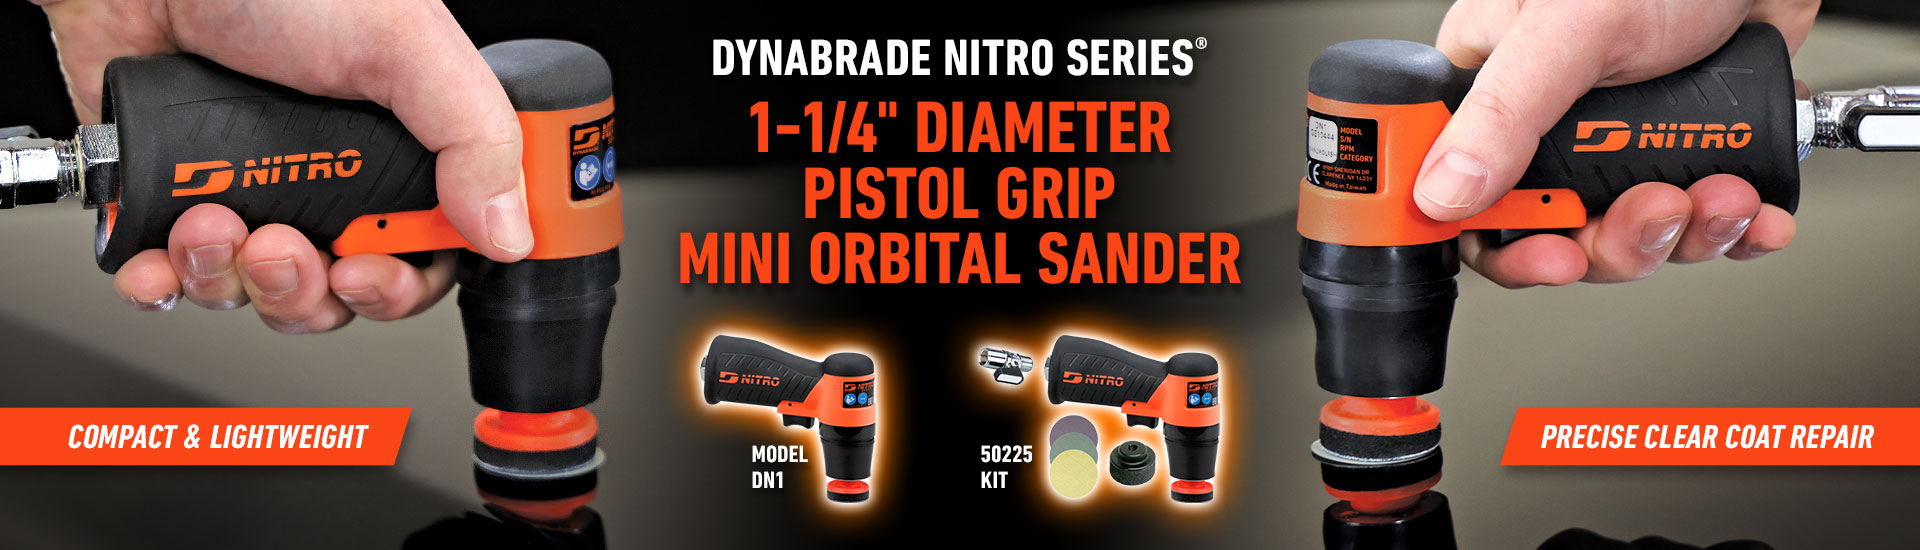 Dynabrade Nitro Series DN1